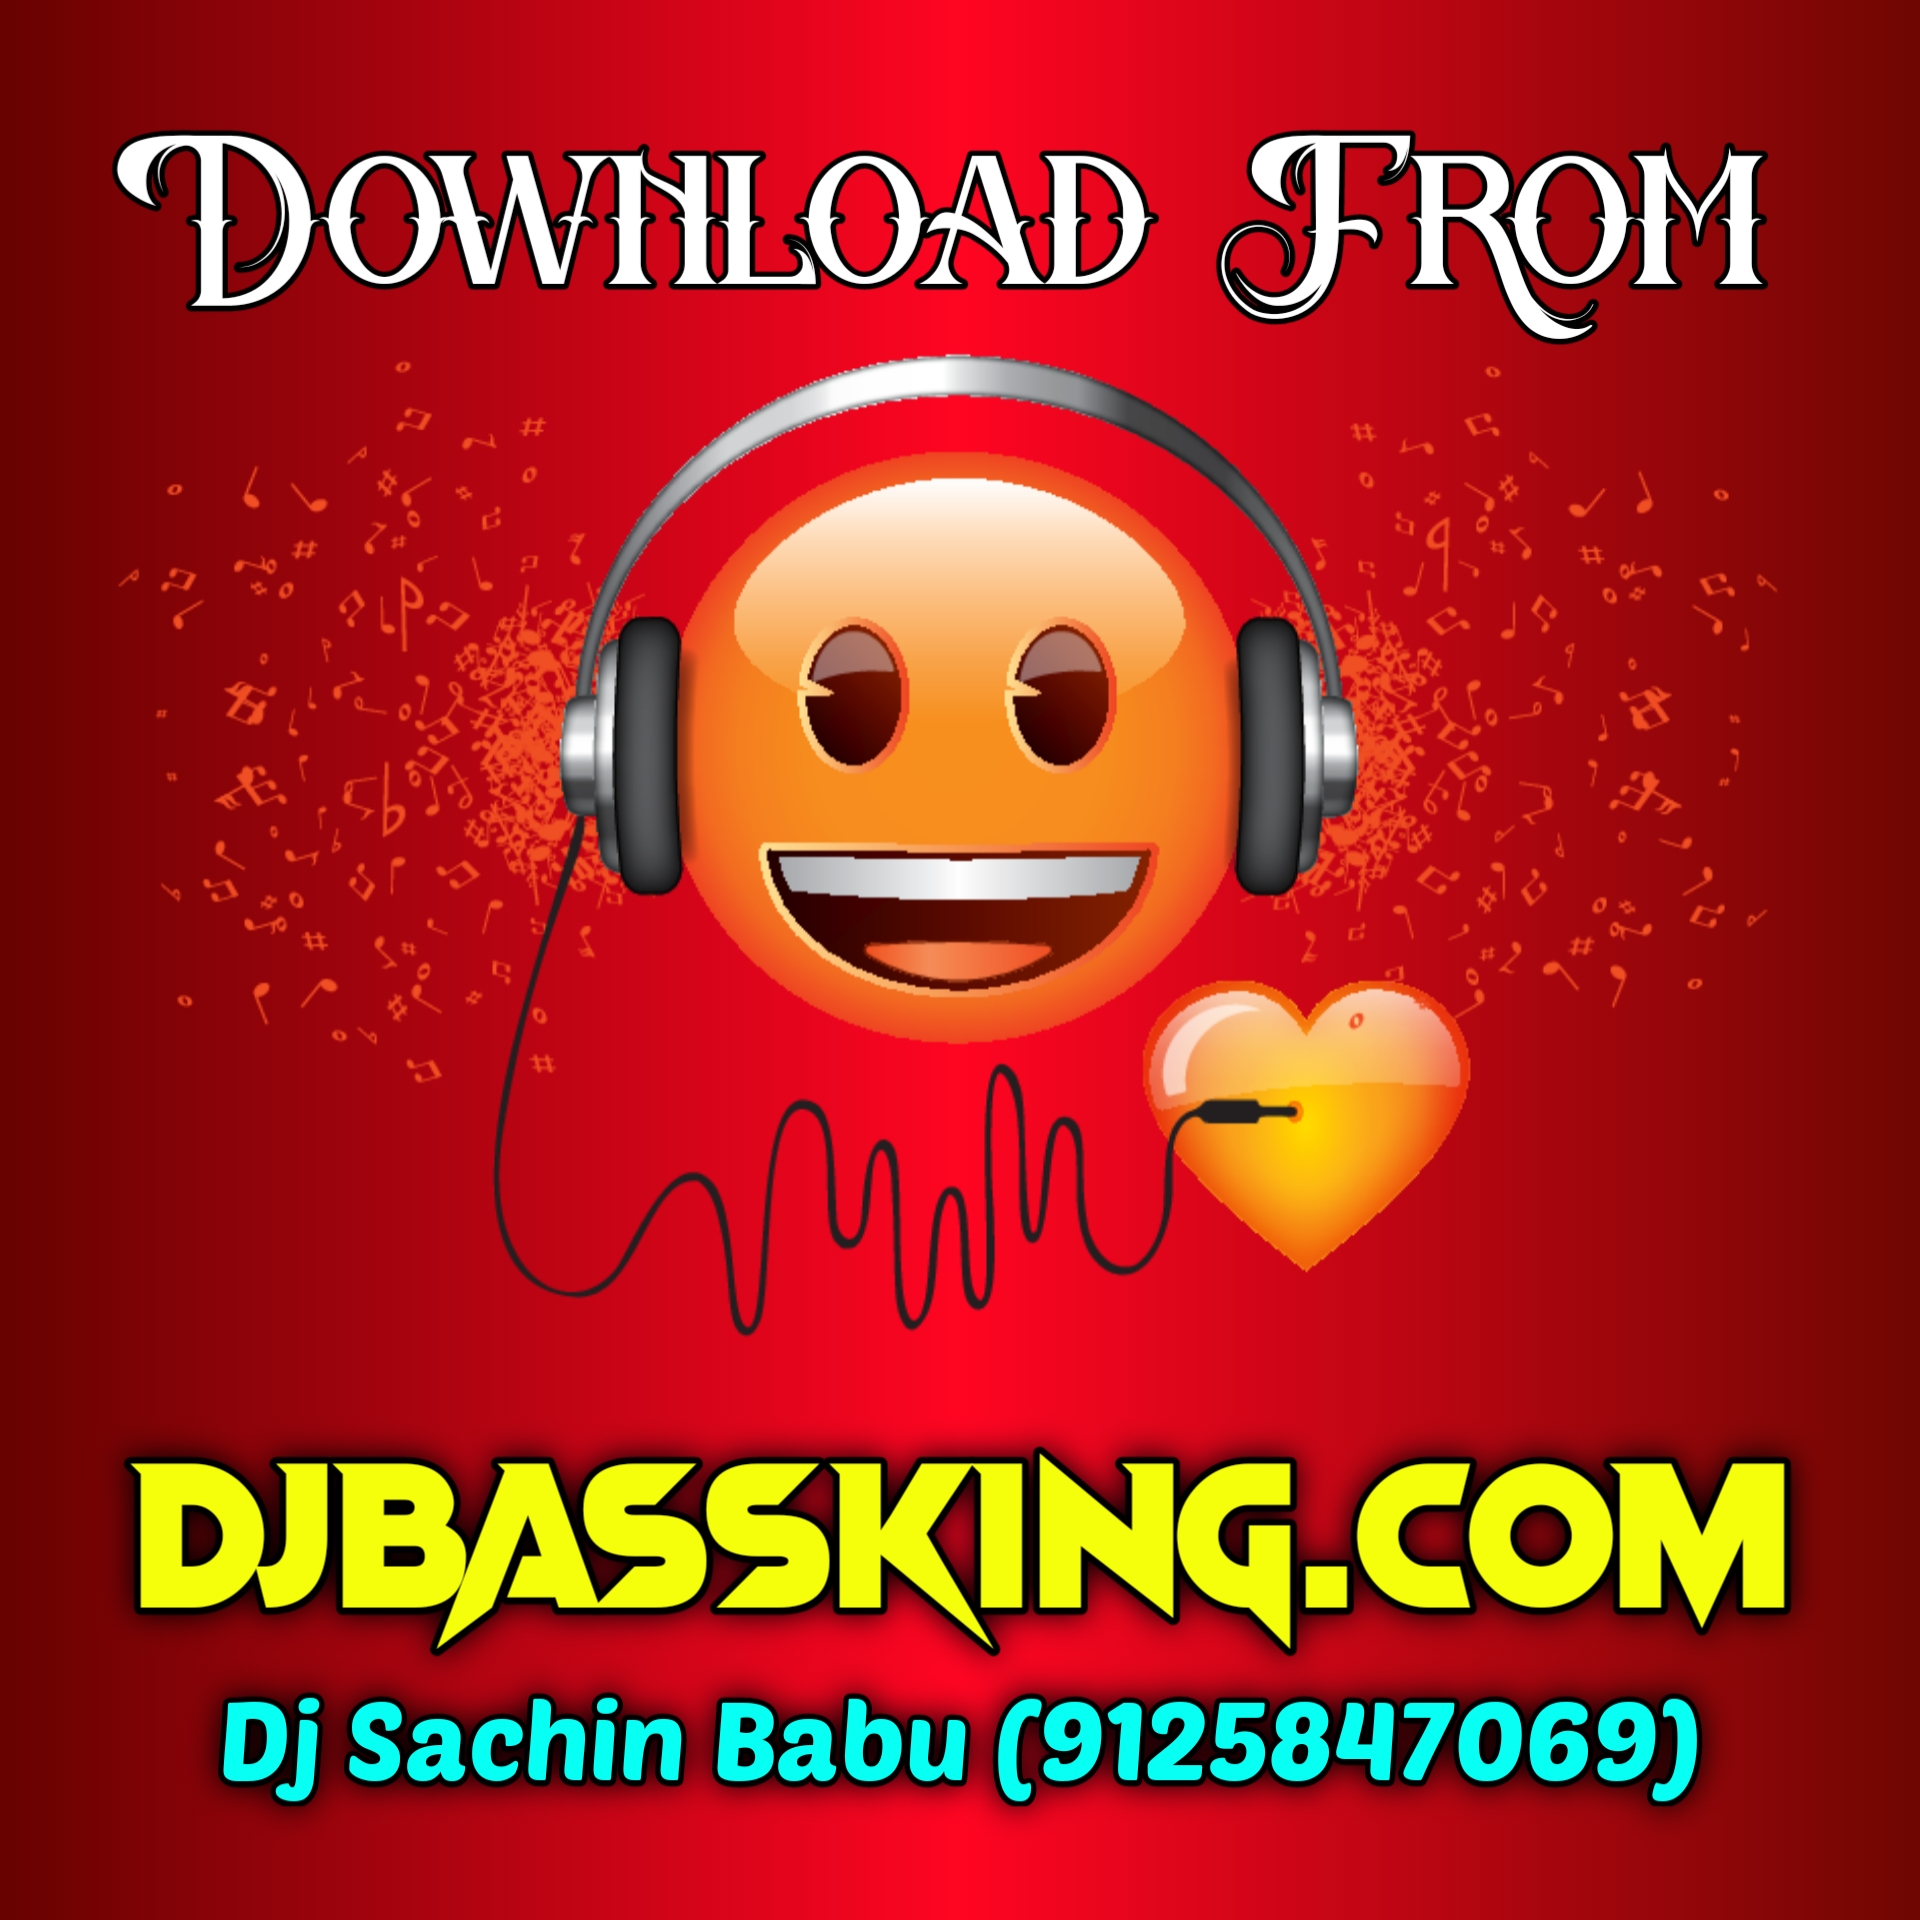 Dhaniya A Jaan Pawan Singh Hard Edm Bass Mixx Dj Sachin Babu BassKing